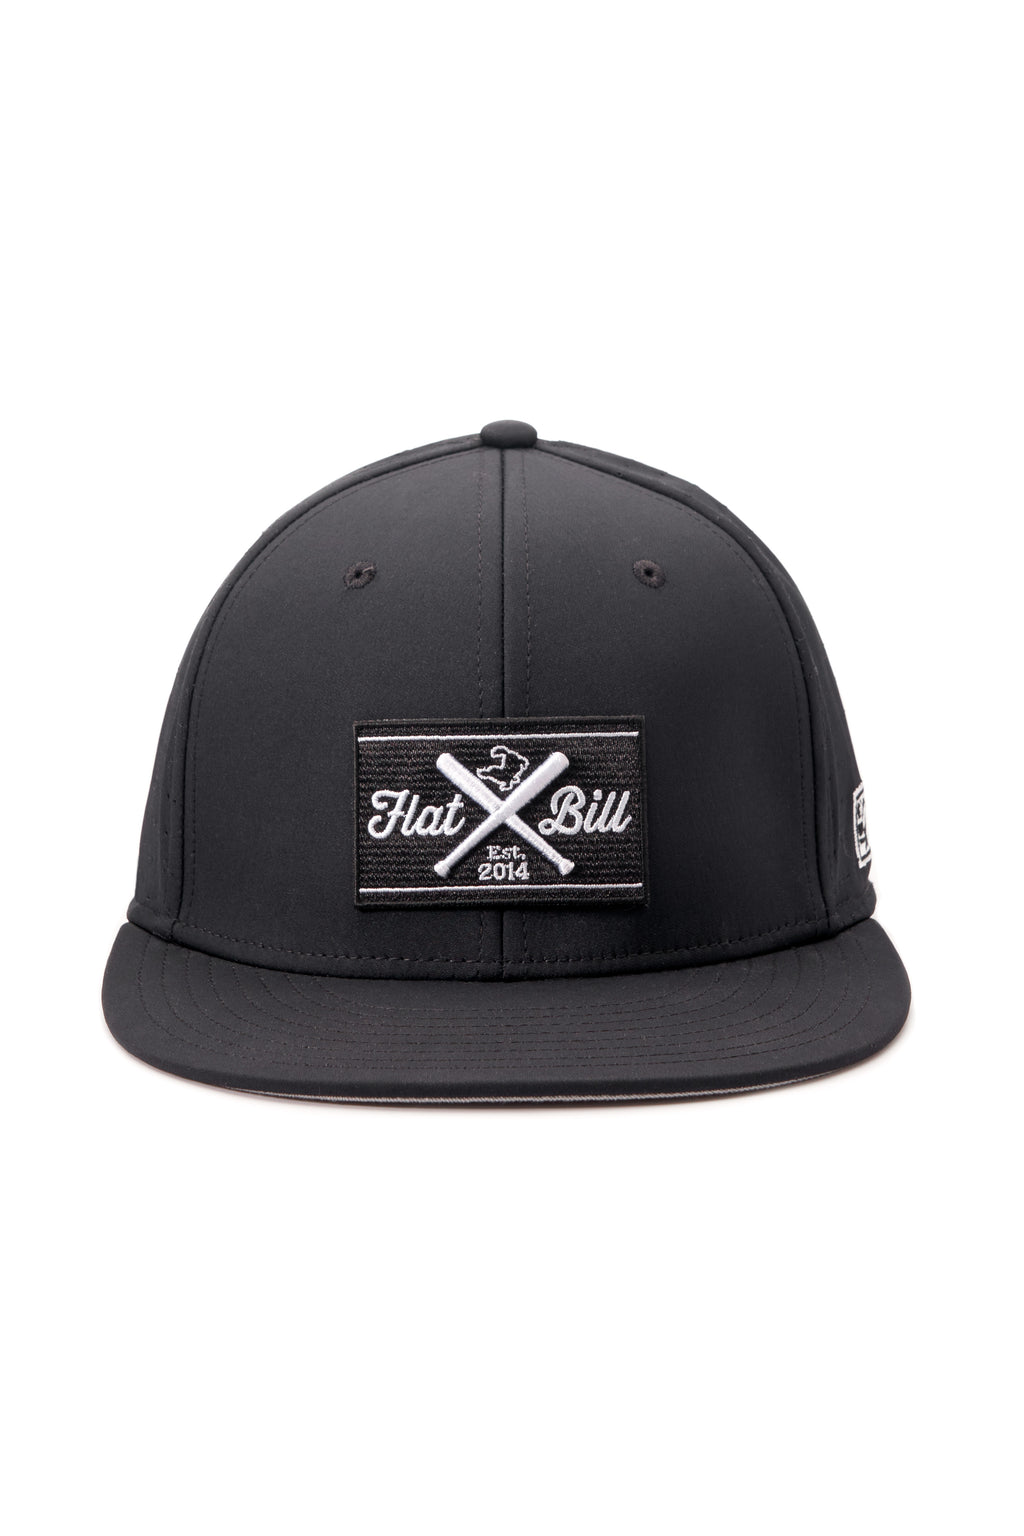 Flatbill Classic Charcoal Flex Fit Cap – Flatbill Baseball